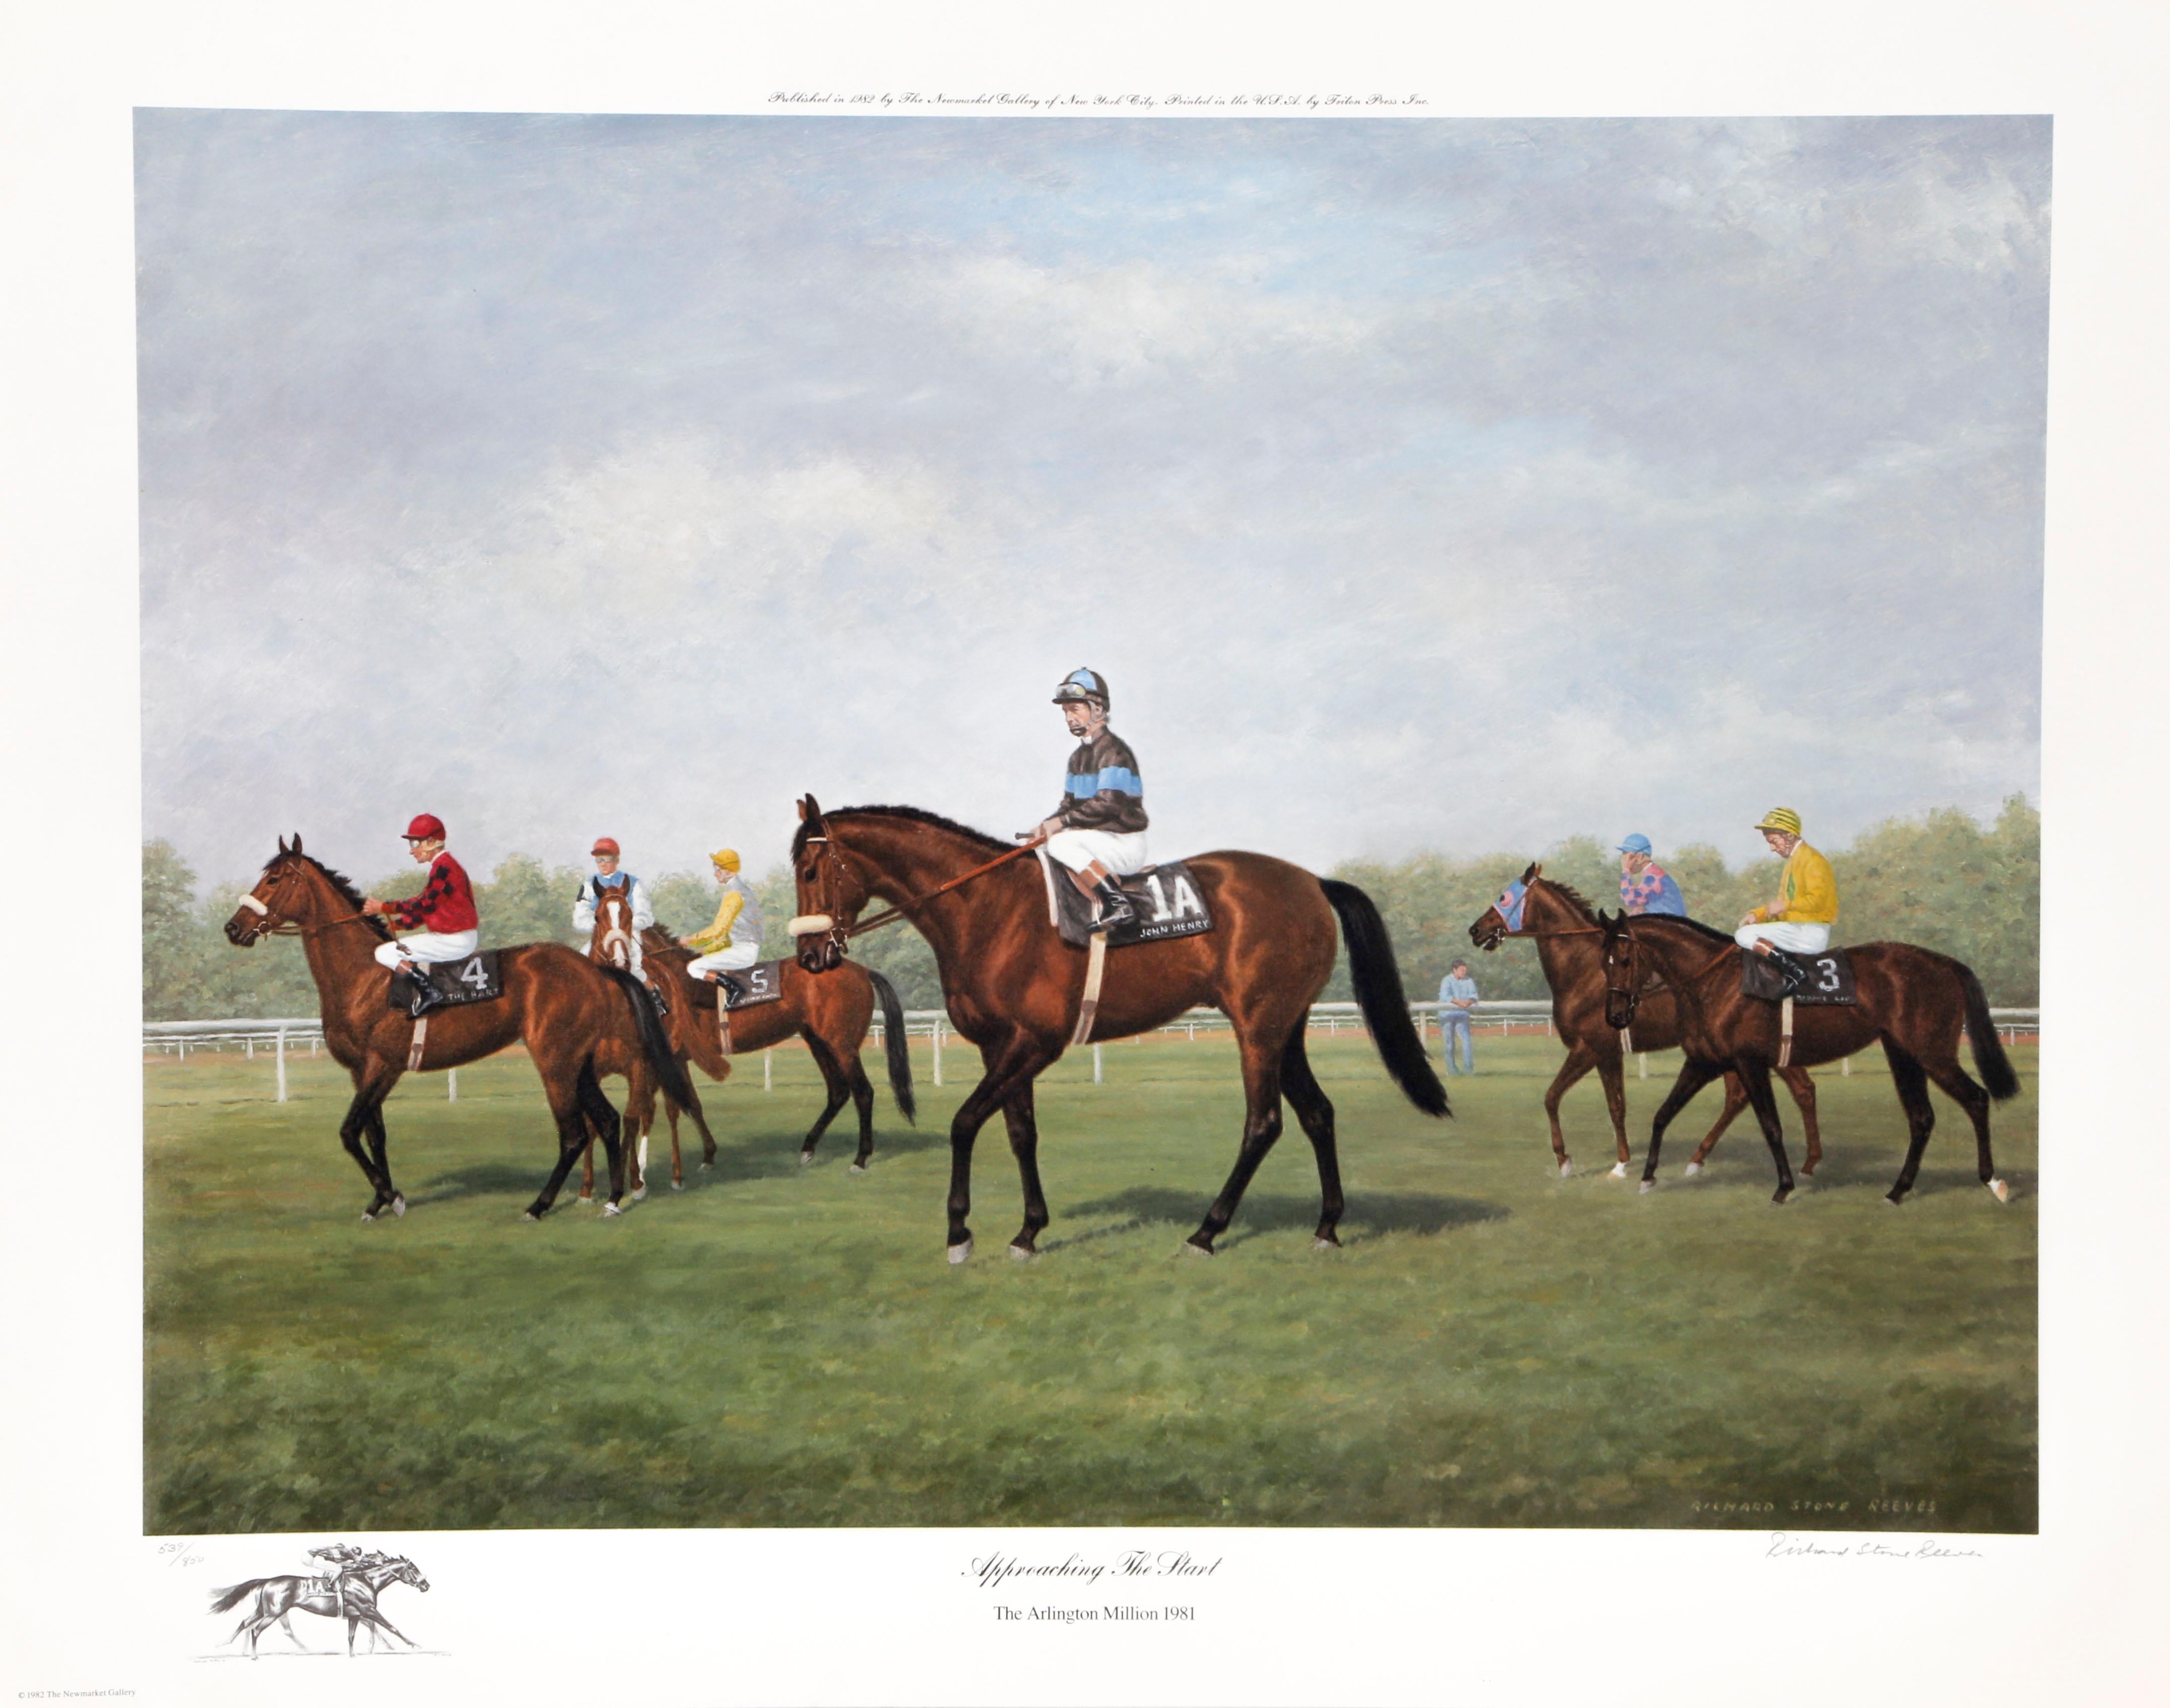 Mehrere Pferde und ihre Reiter nähern sich der Startlinie, um ein Rennen zu beginnen.

Annäherung an den Start
Richard Stone Reeves, Amerikaner (1919-2005)
Datum: 1982
Lithographie, mit Bleistift signiert und nummeriert
Auflage von